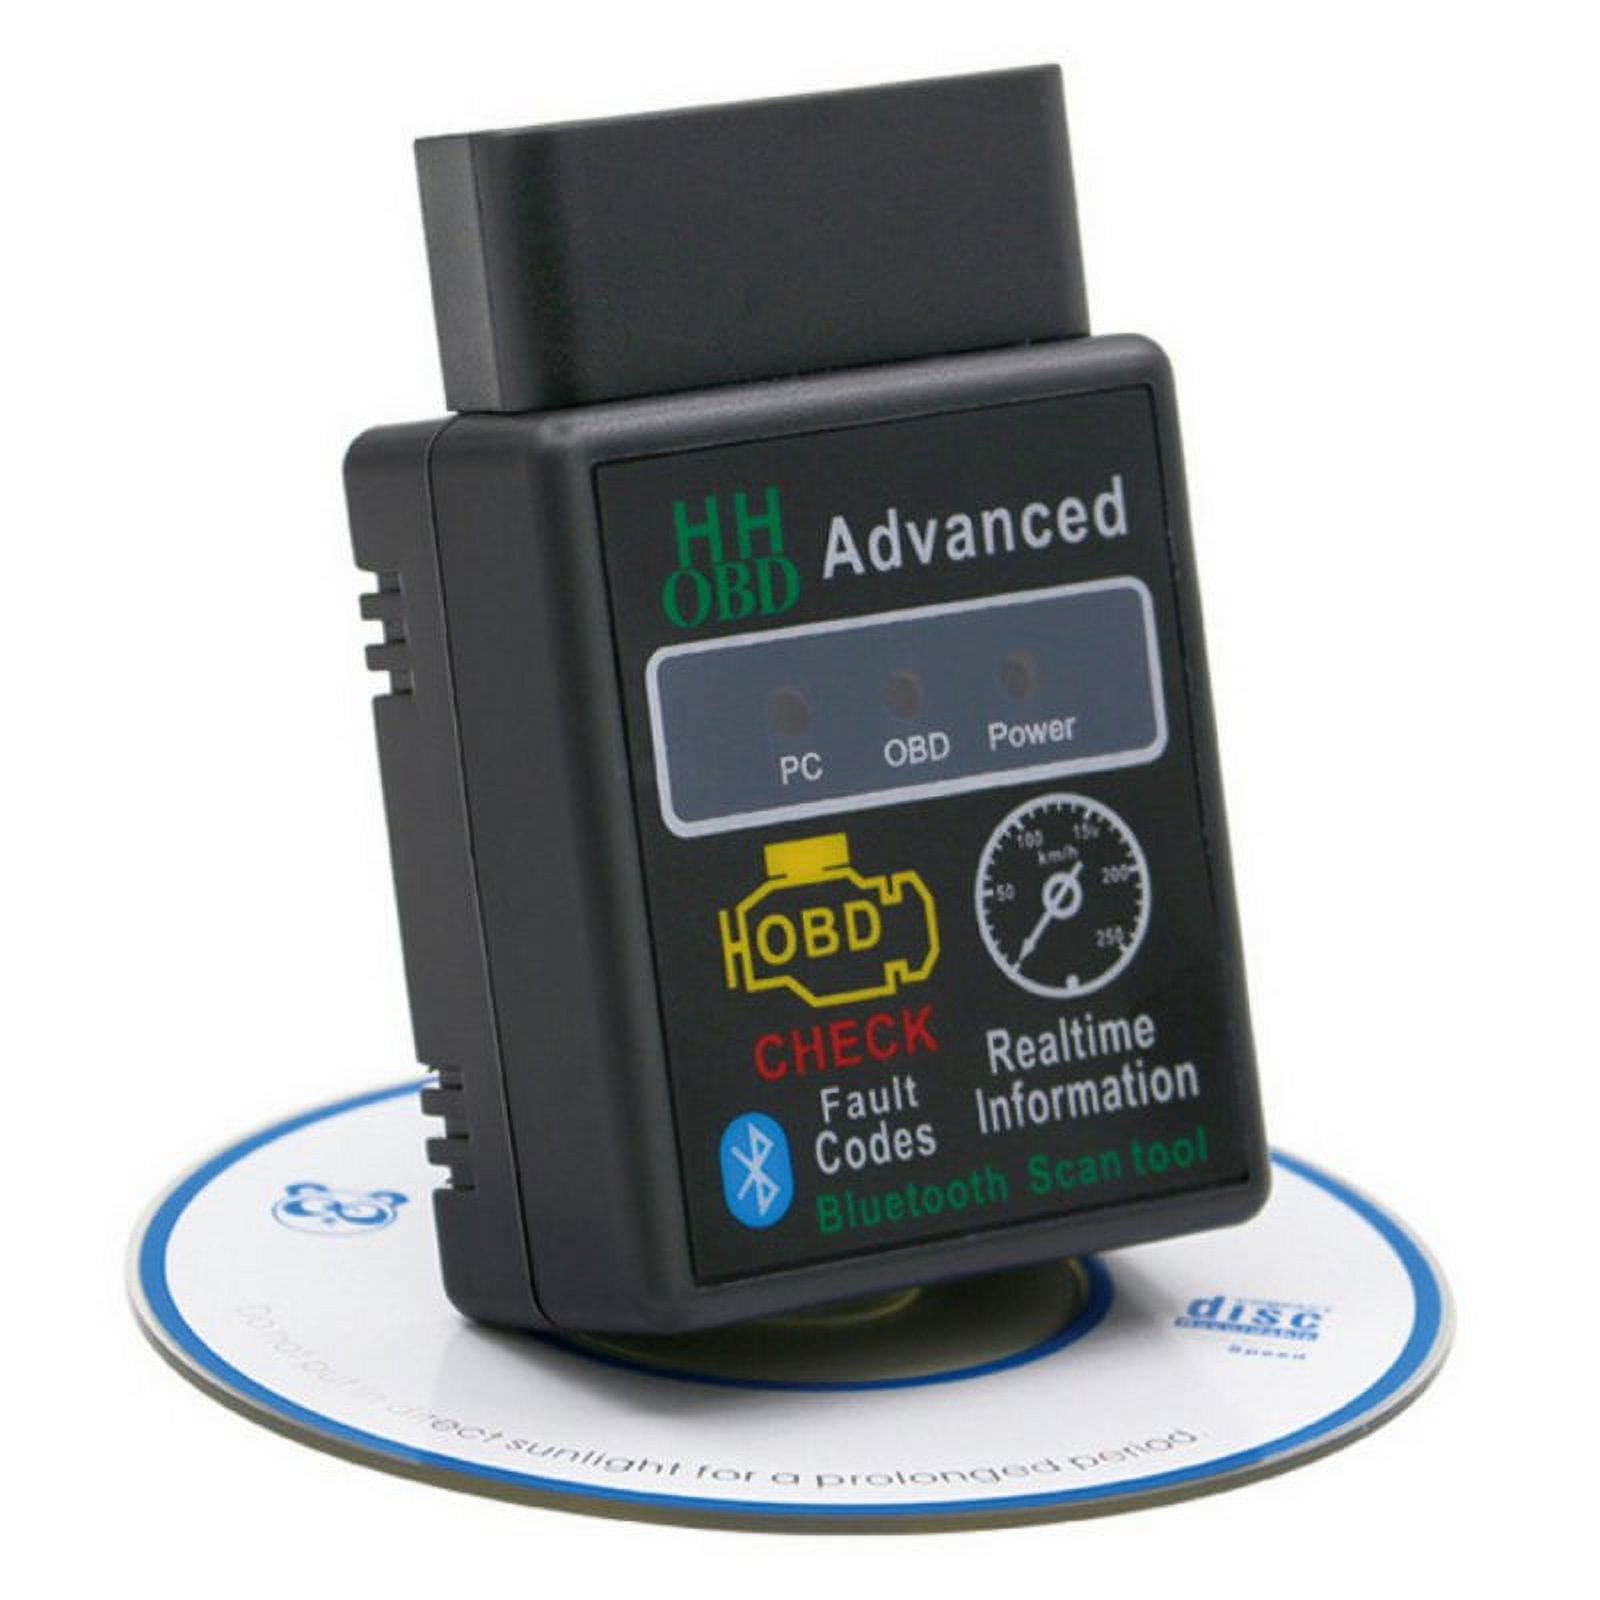 ELM327 V 2.1 OBD2 Scanner, Mini Bluetooth Scan Tool Engine Car Code Reader  Auto Diagnostic Scanner